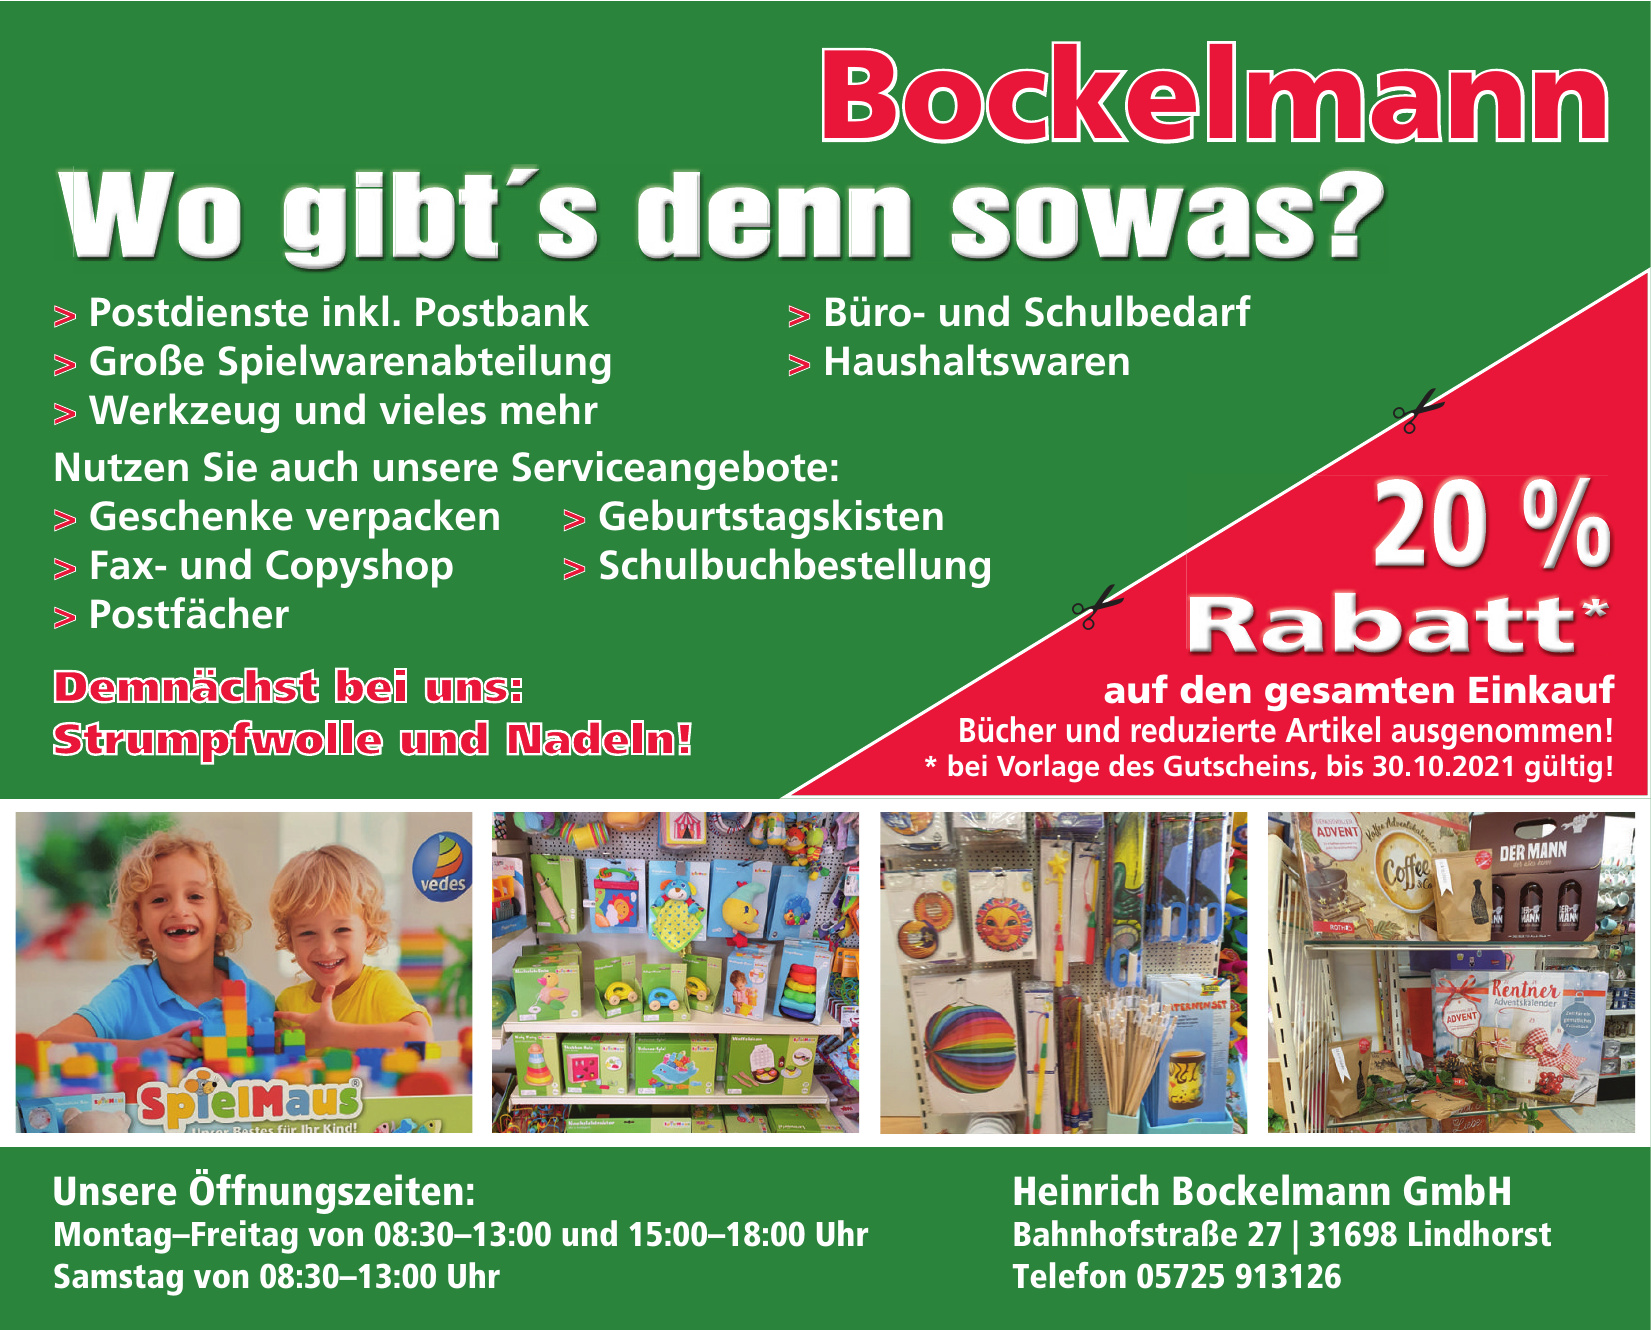 Heinrich Bockelmann GmbH